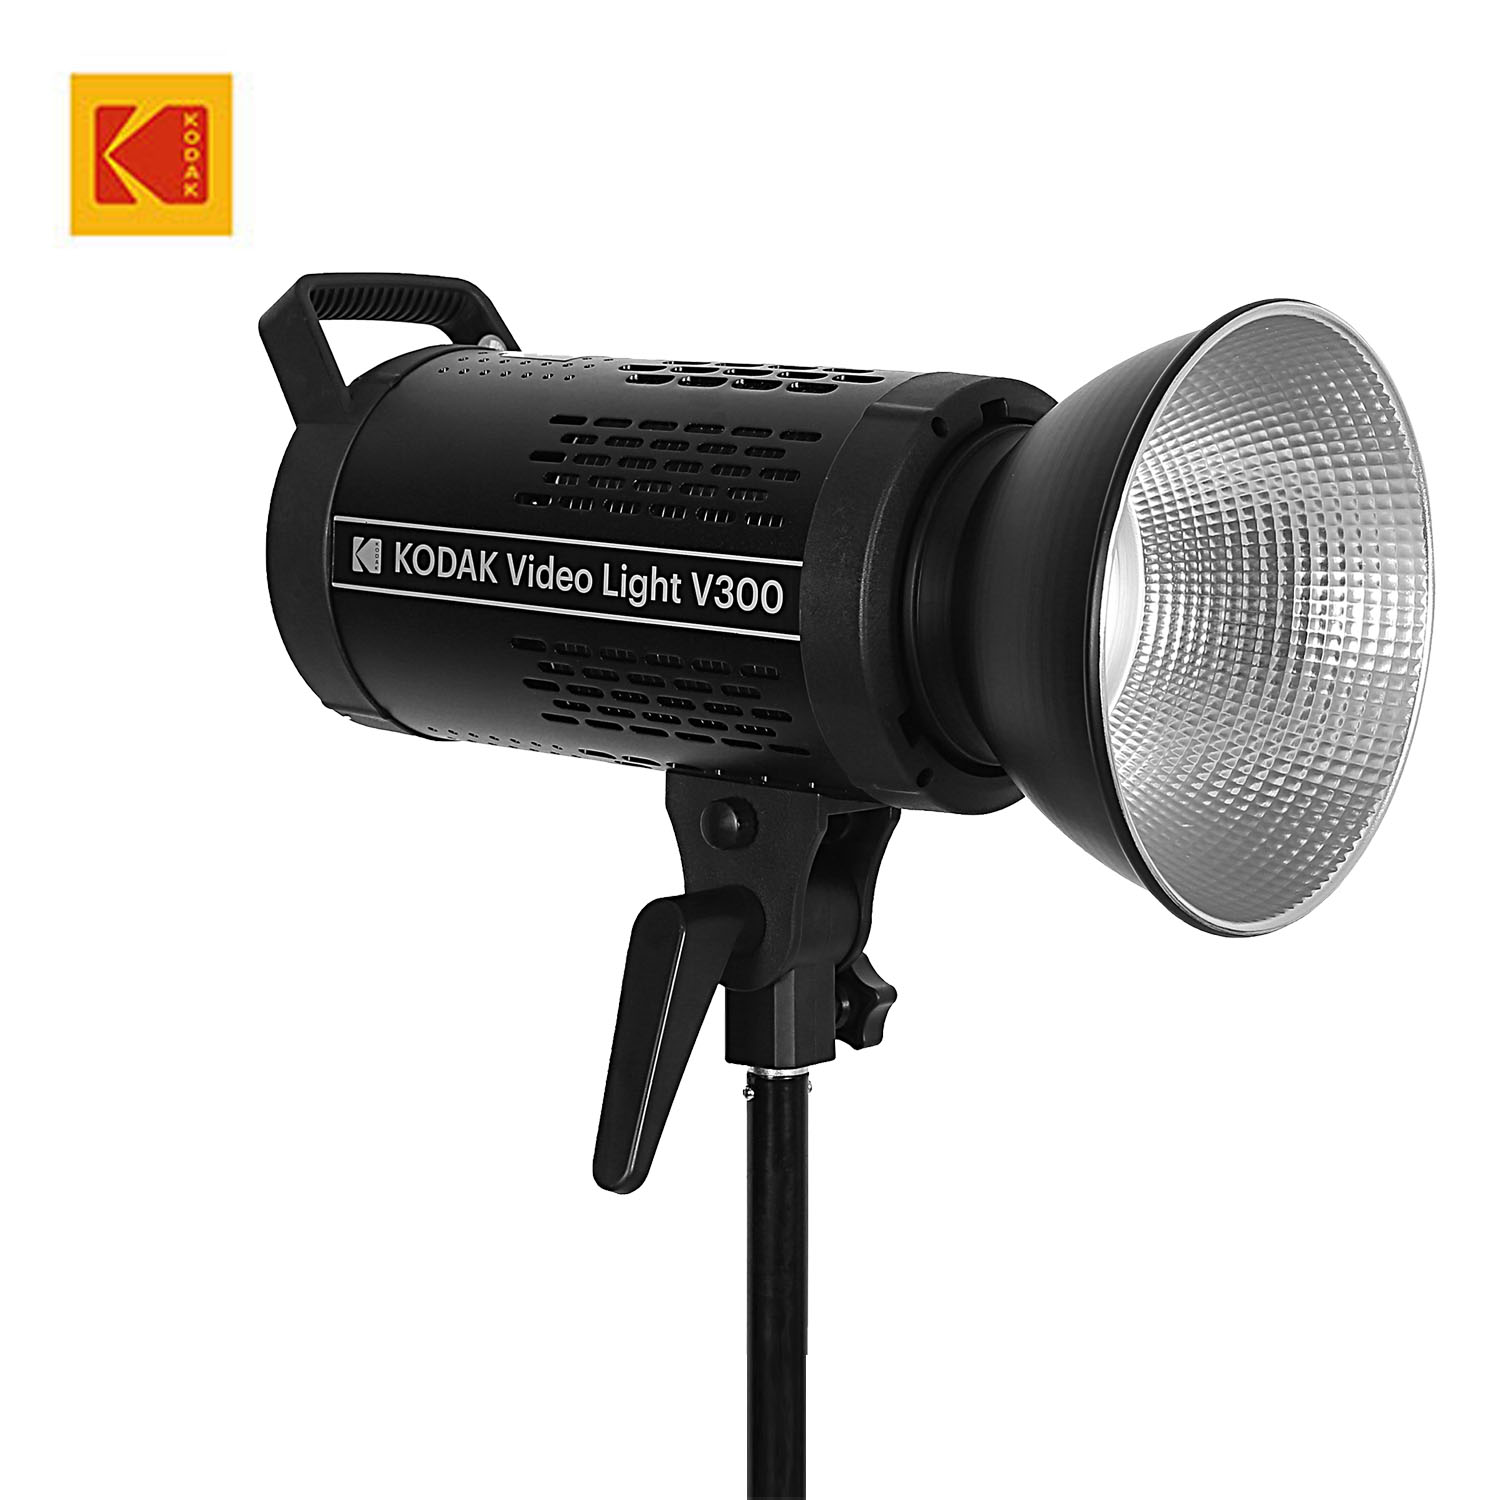 KODAK Video Light V300